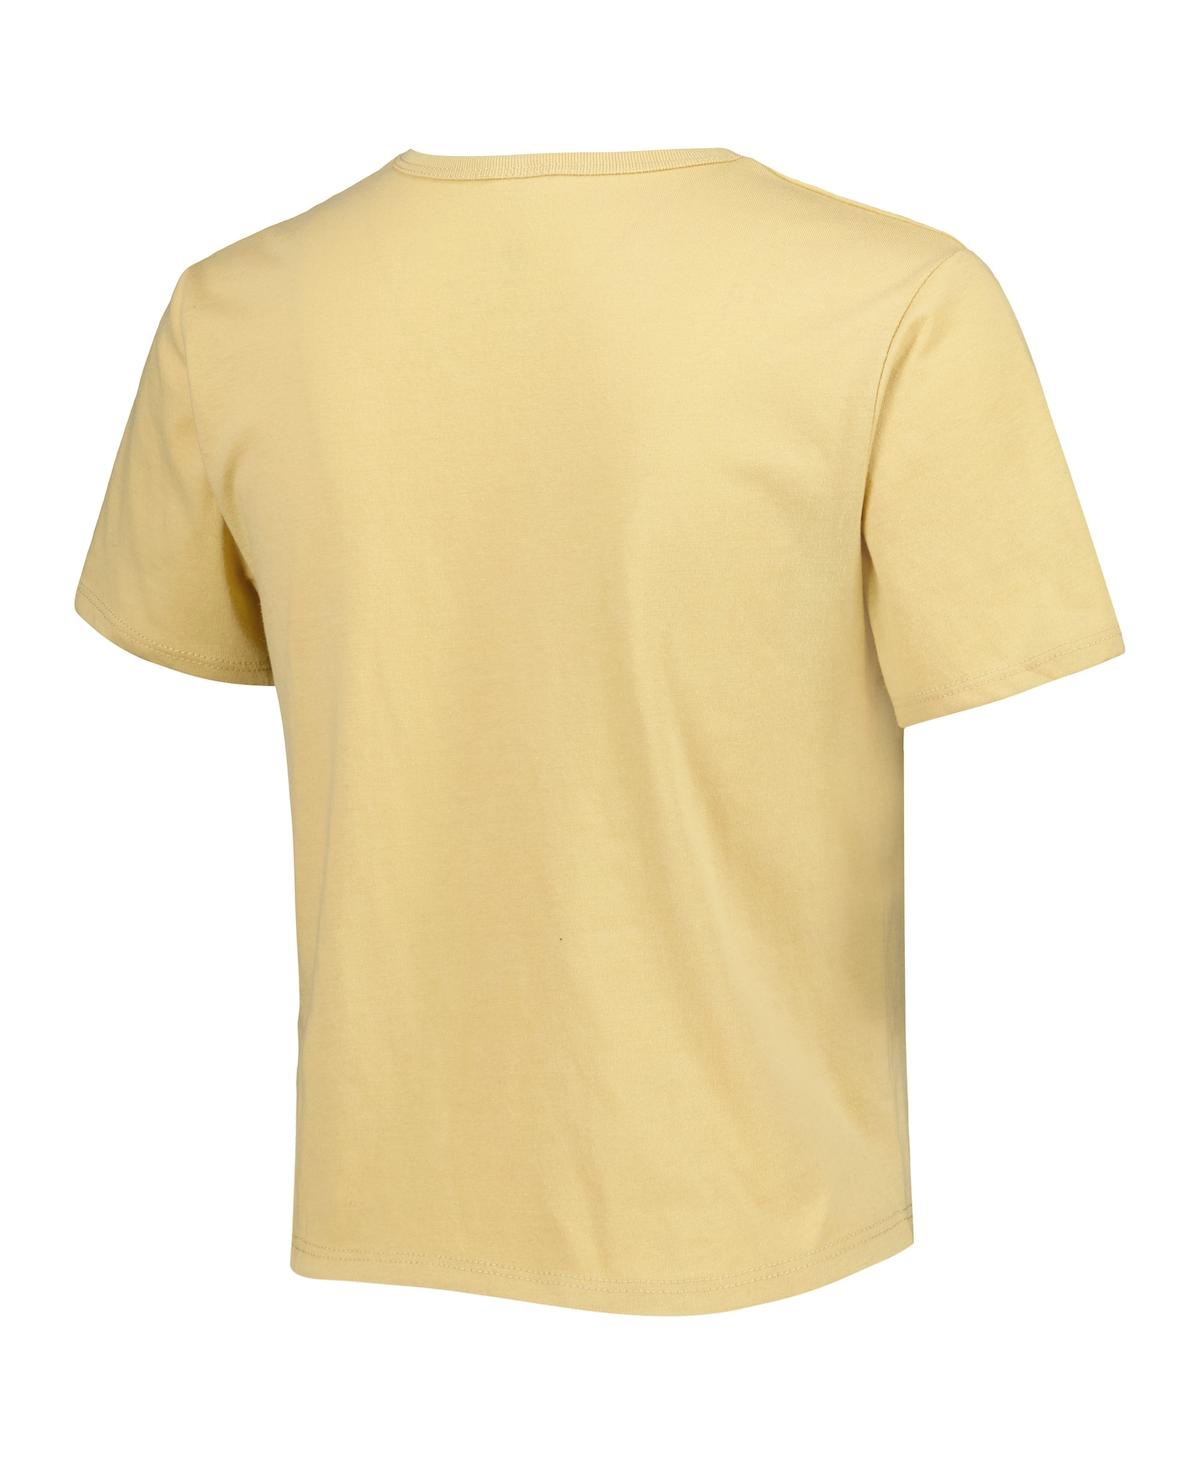 Shop Zoozatz Women's  Yellow Oklahoma Sooners Core Fashion Cropped T-shirt